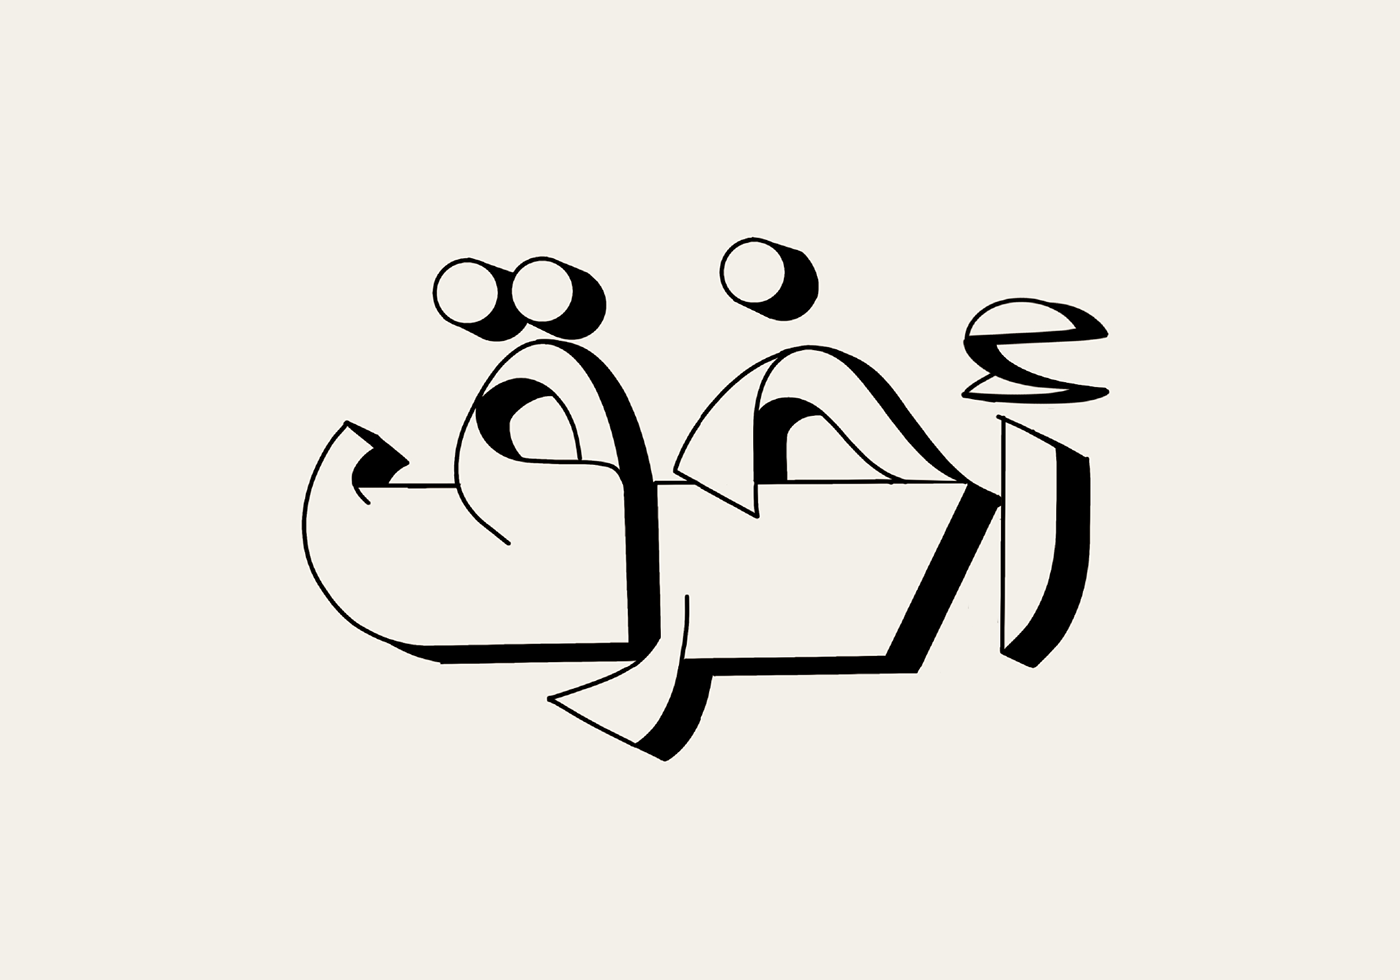 arabic type arabic typography font hebrayer type experiments typo typography design typography layout تايبوجرافي